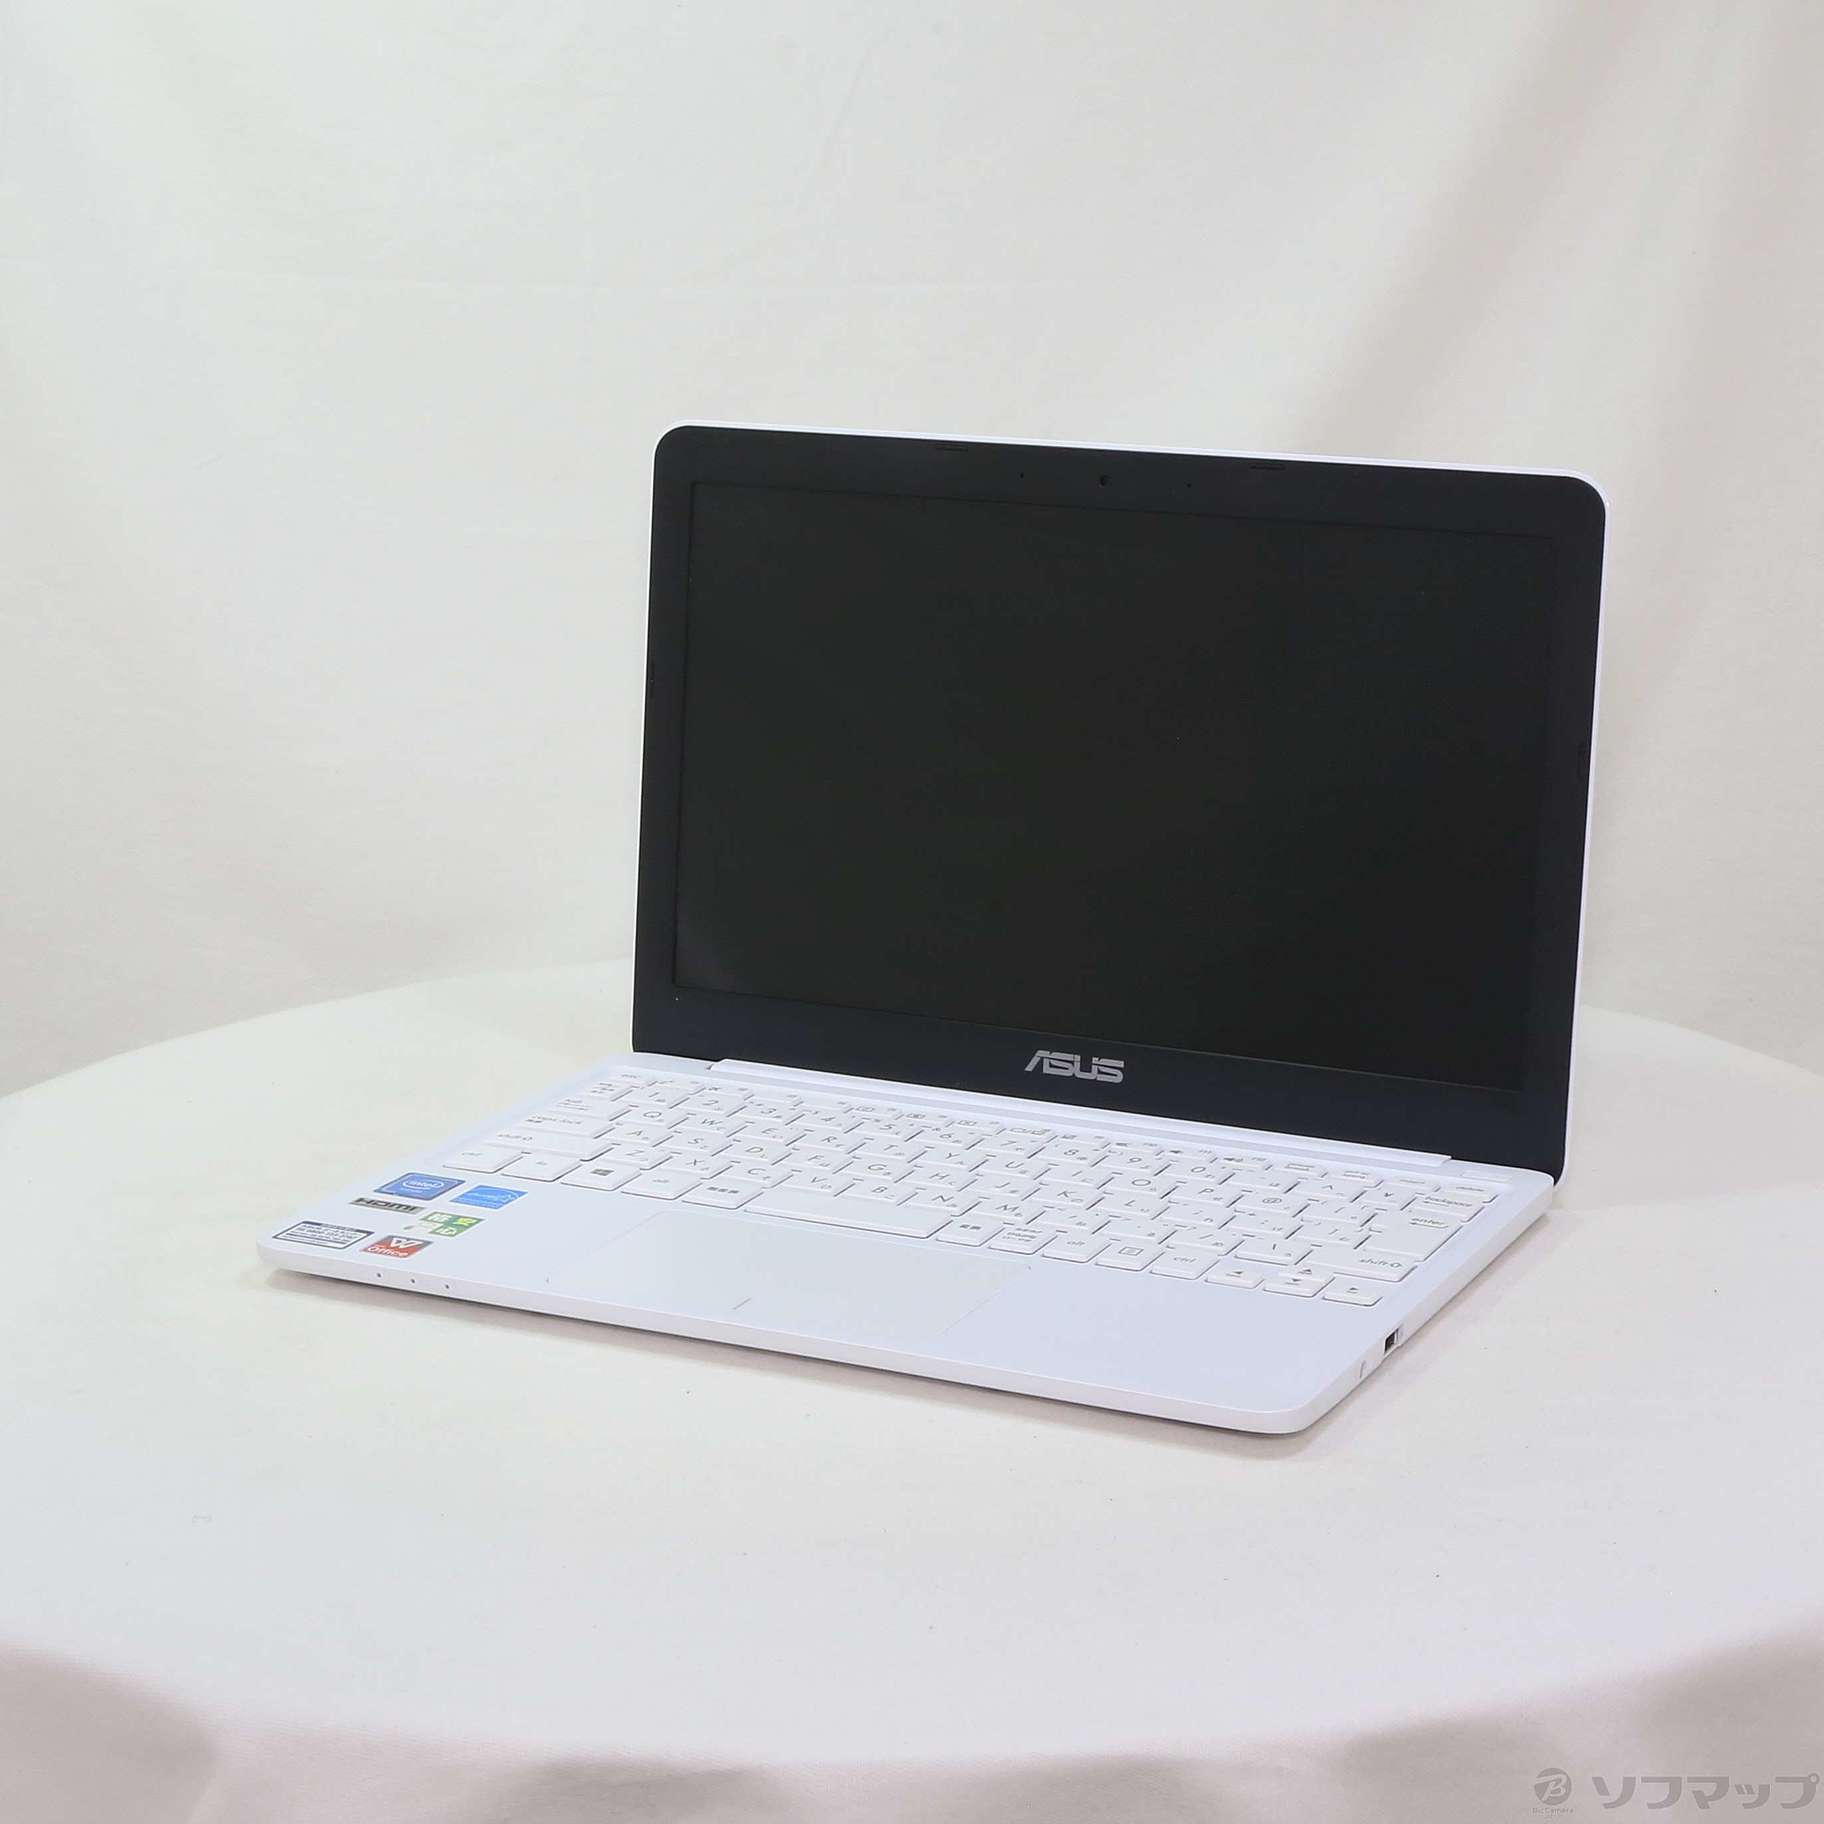 中古】格安安心パソコン VivoBook E200HA E200HA-8350W ホワイト